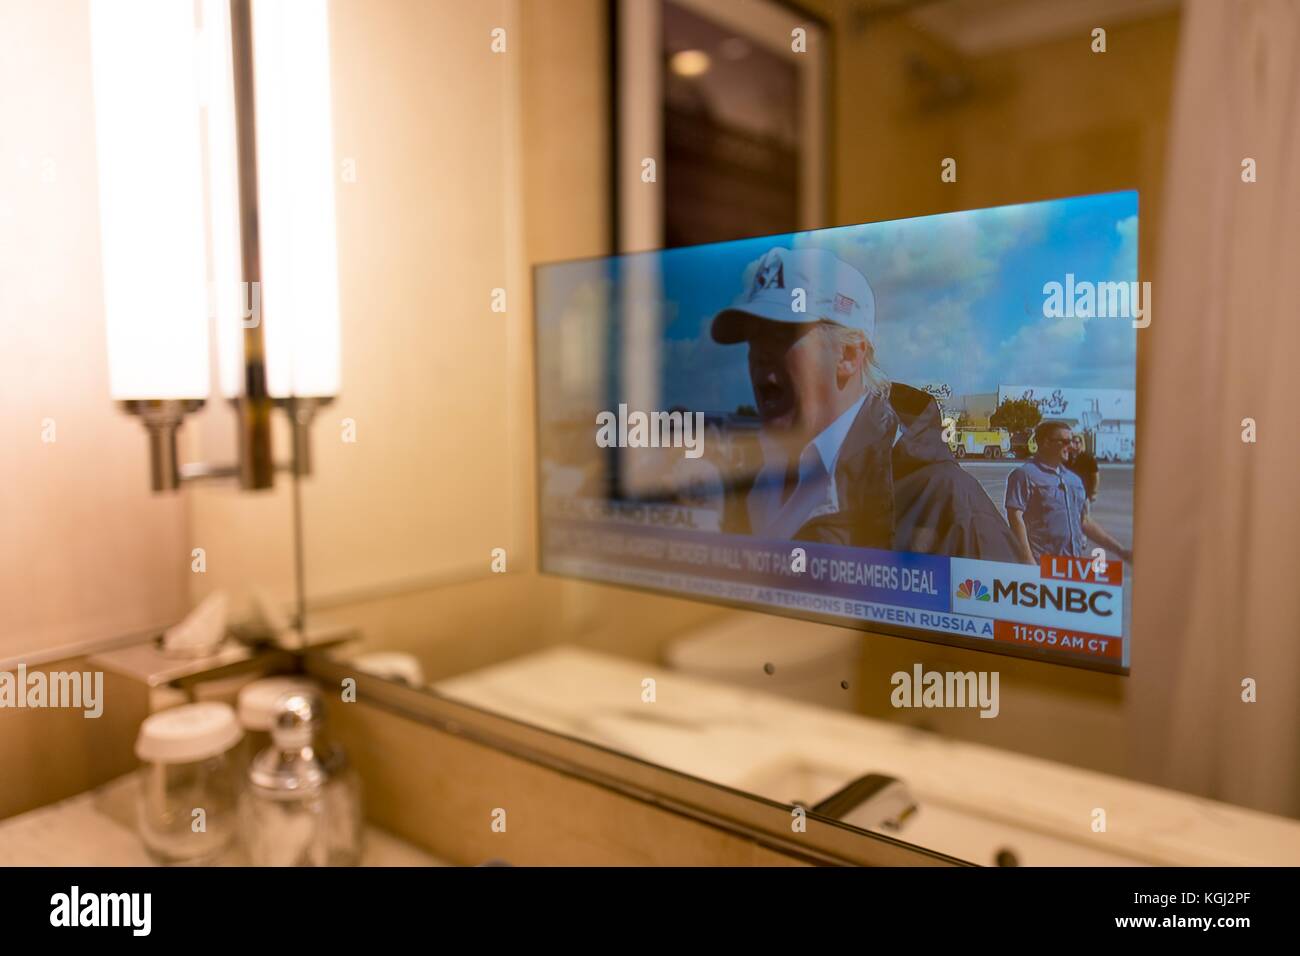 An ein Business Hotel in Manhattan, New York City, New York, einer transparenten Fernsehen in das Badezimmer Spiegel bietet integrierte News Updates für Hotelgäste, in diesem Fall eine Geschichte über uns Präsident Donald Trump, 14. September 2017. Stockfoto